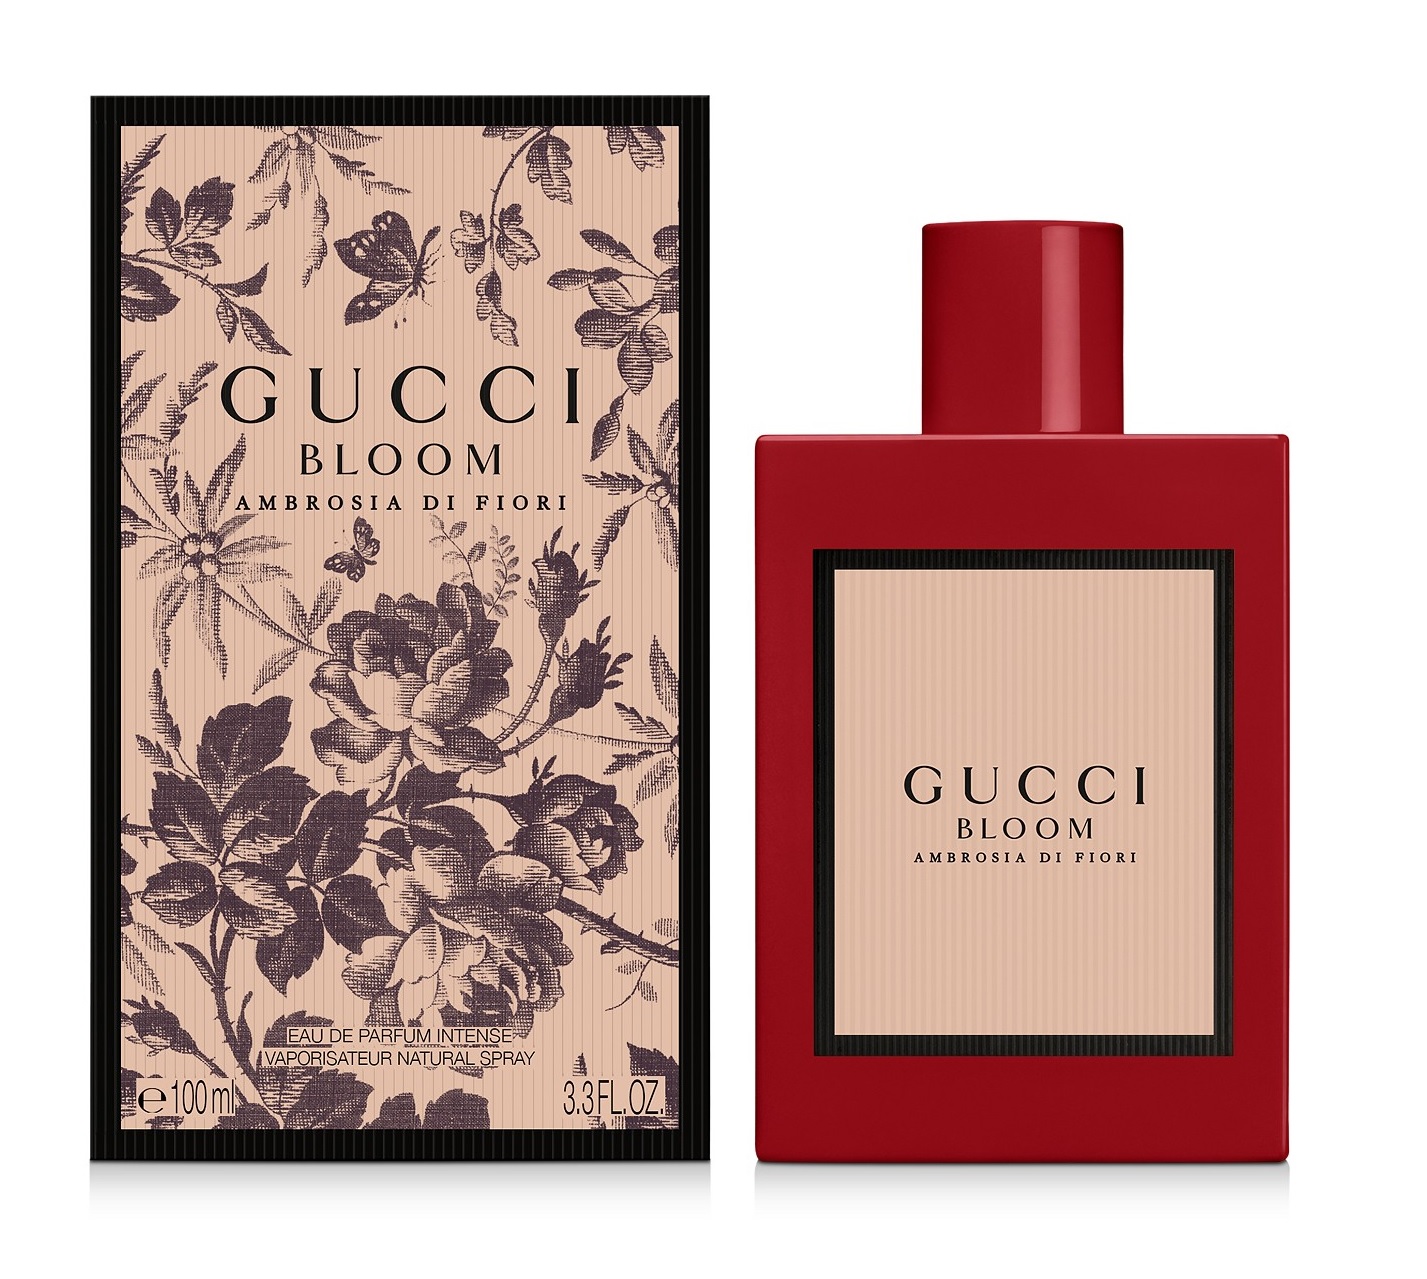 Gucci Gucci Bloom Ambrosia Di Fiori